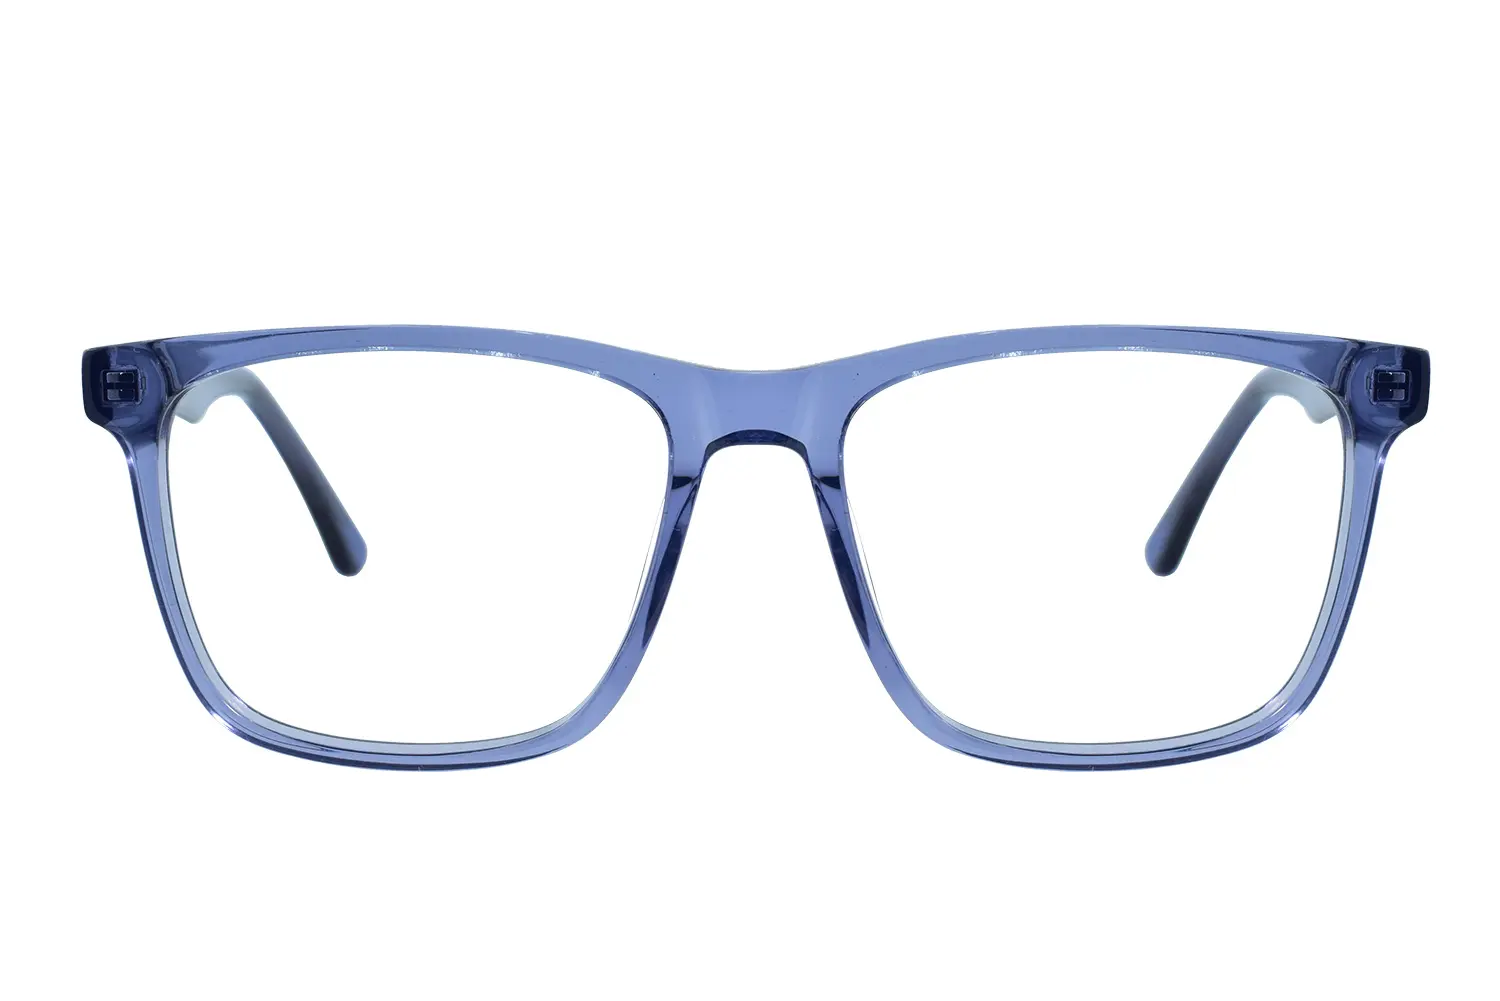 عینک طبی fabio simone مدل dh9107 c4 - دکترعینک